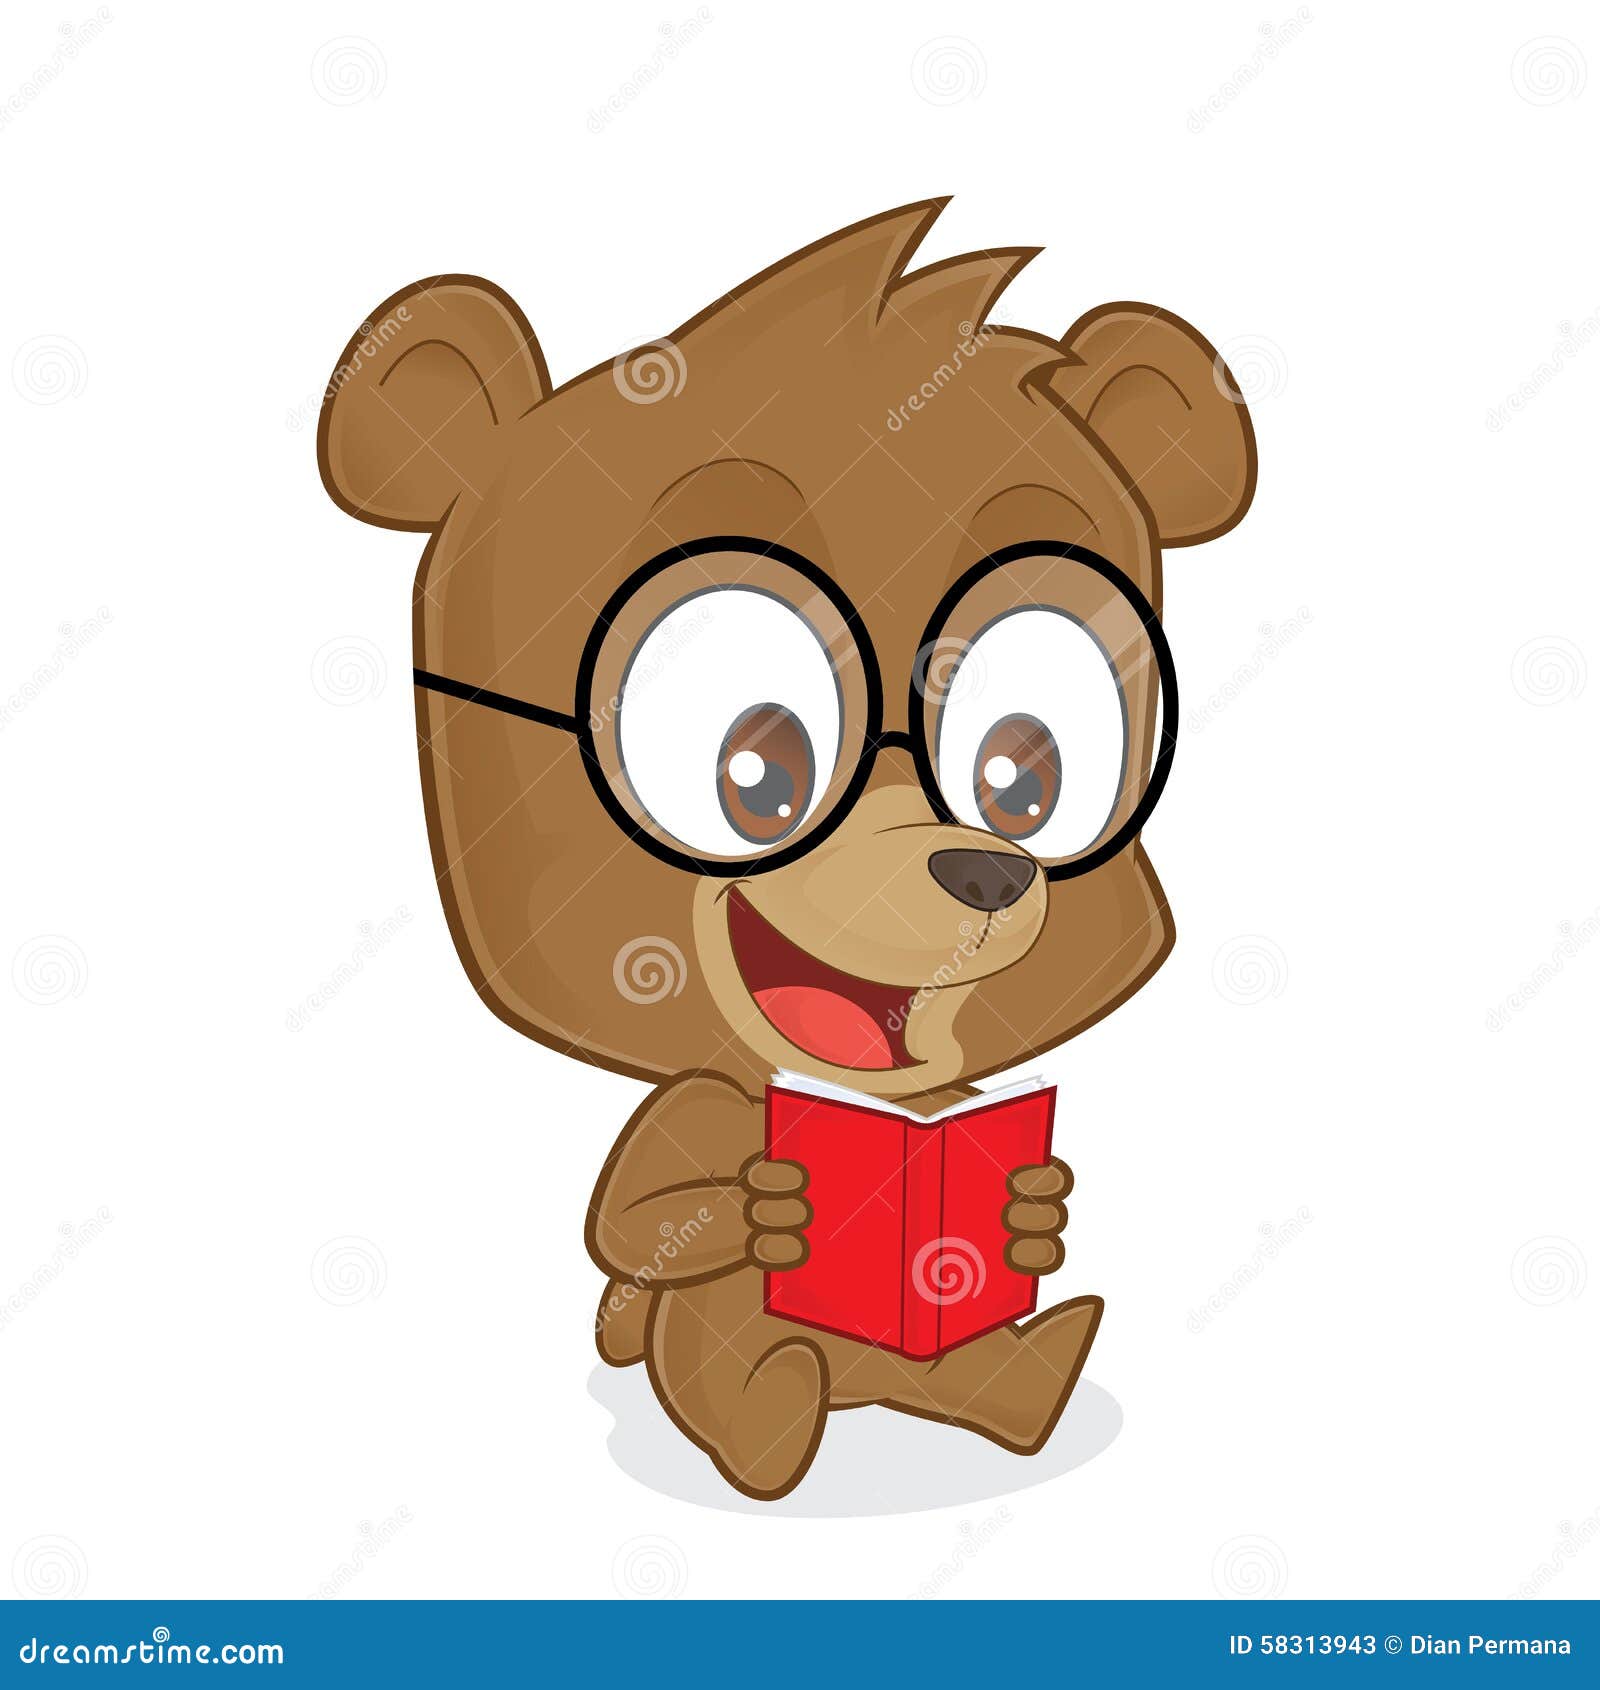 teddy bear reading clipart - photo #9